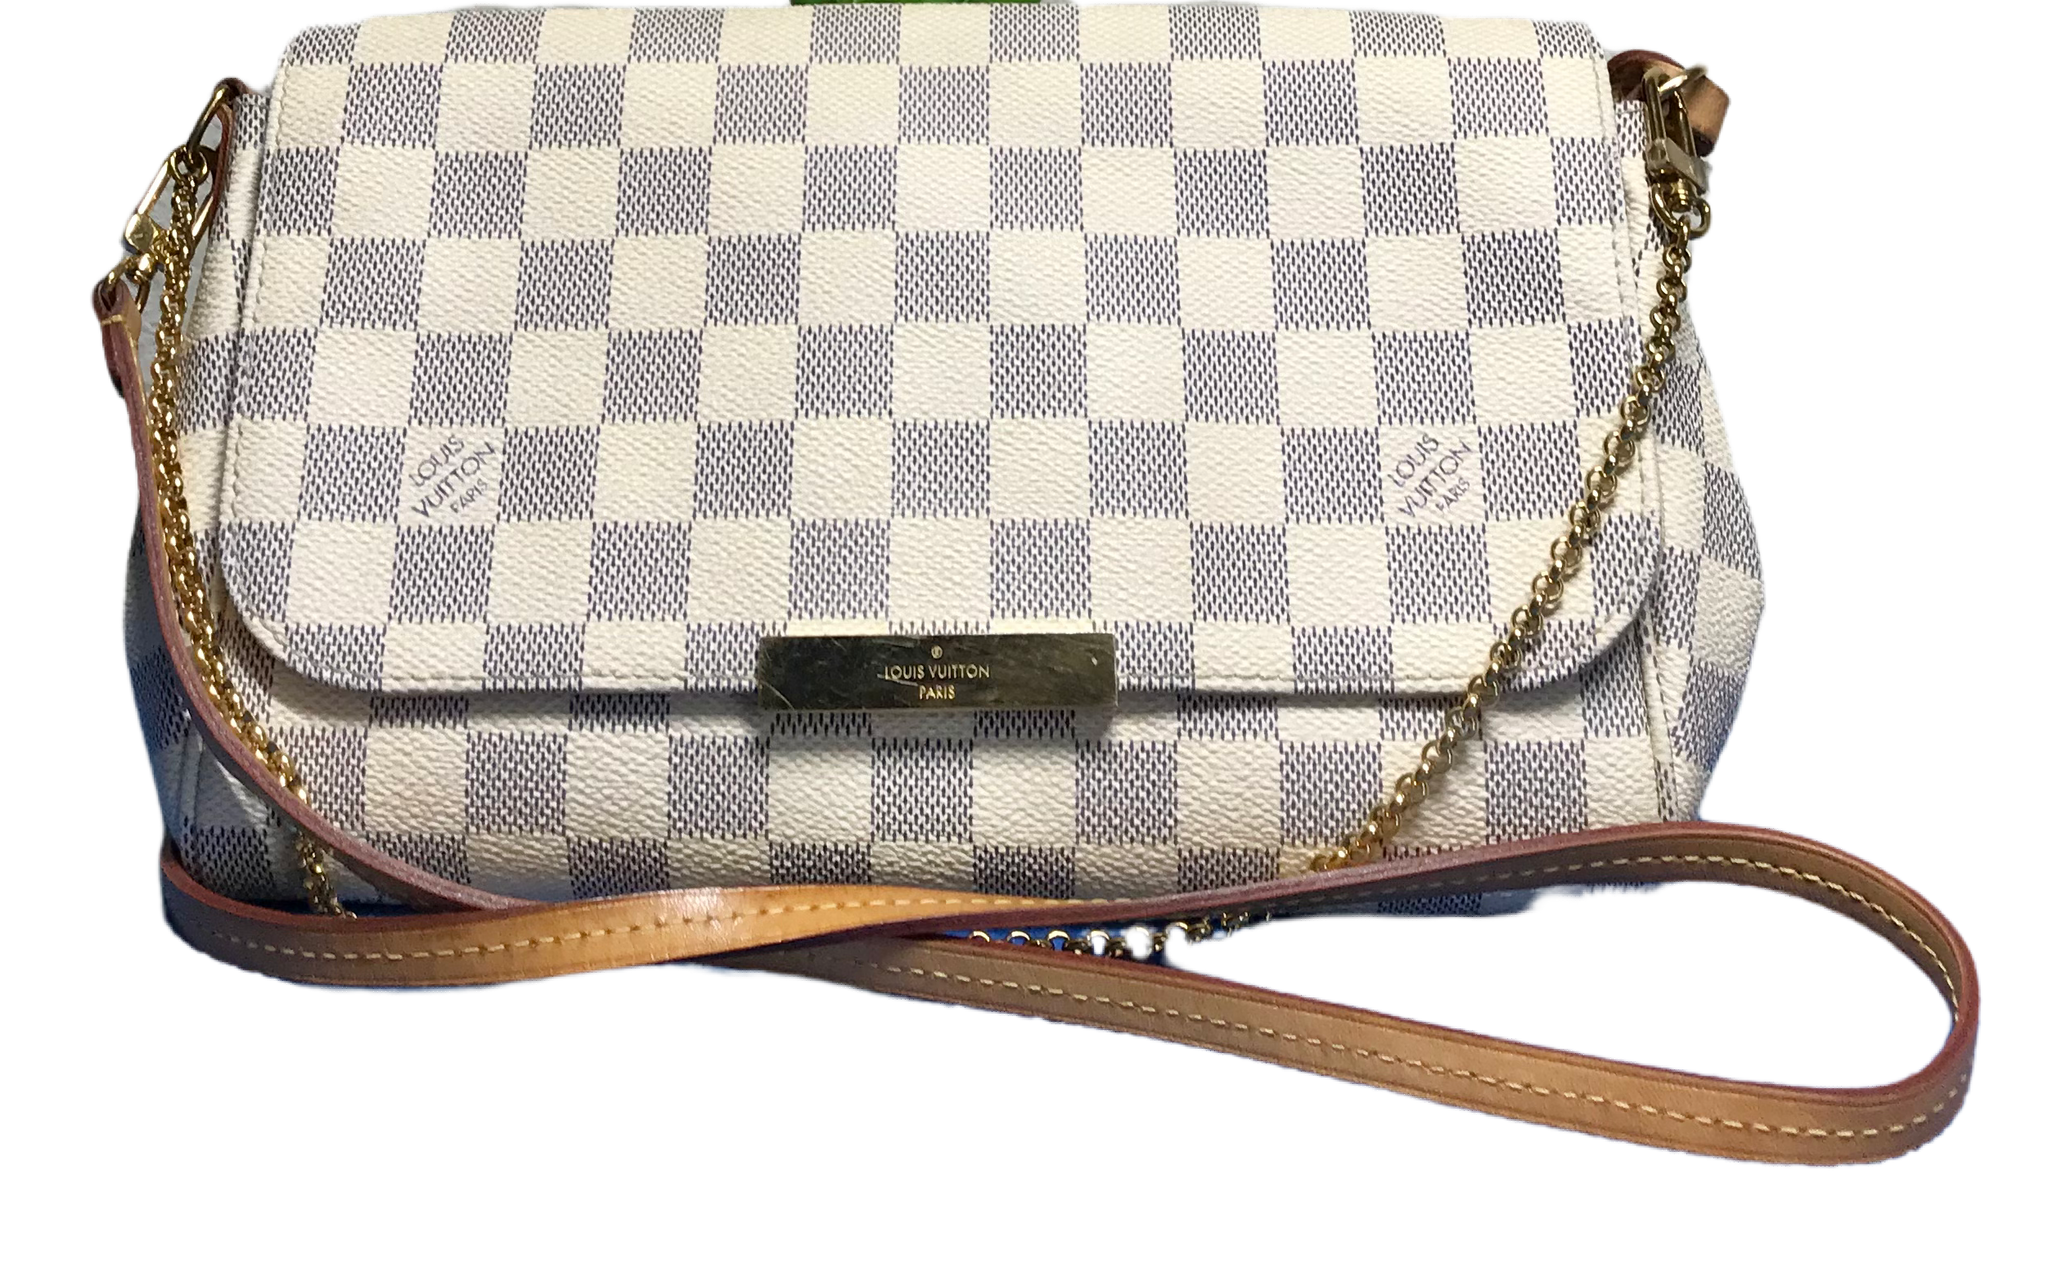 Authentic Louis Vuitton Favorite MM Shoulder/Crossbody Bag